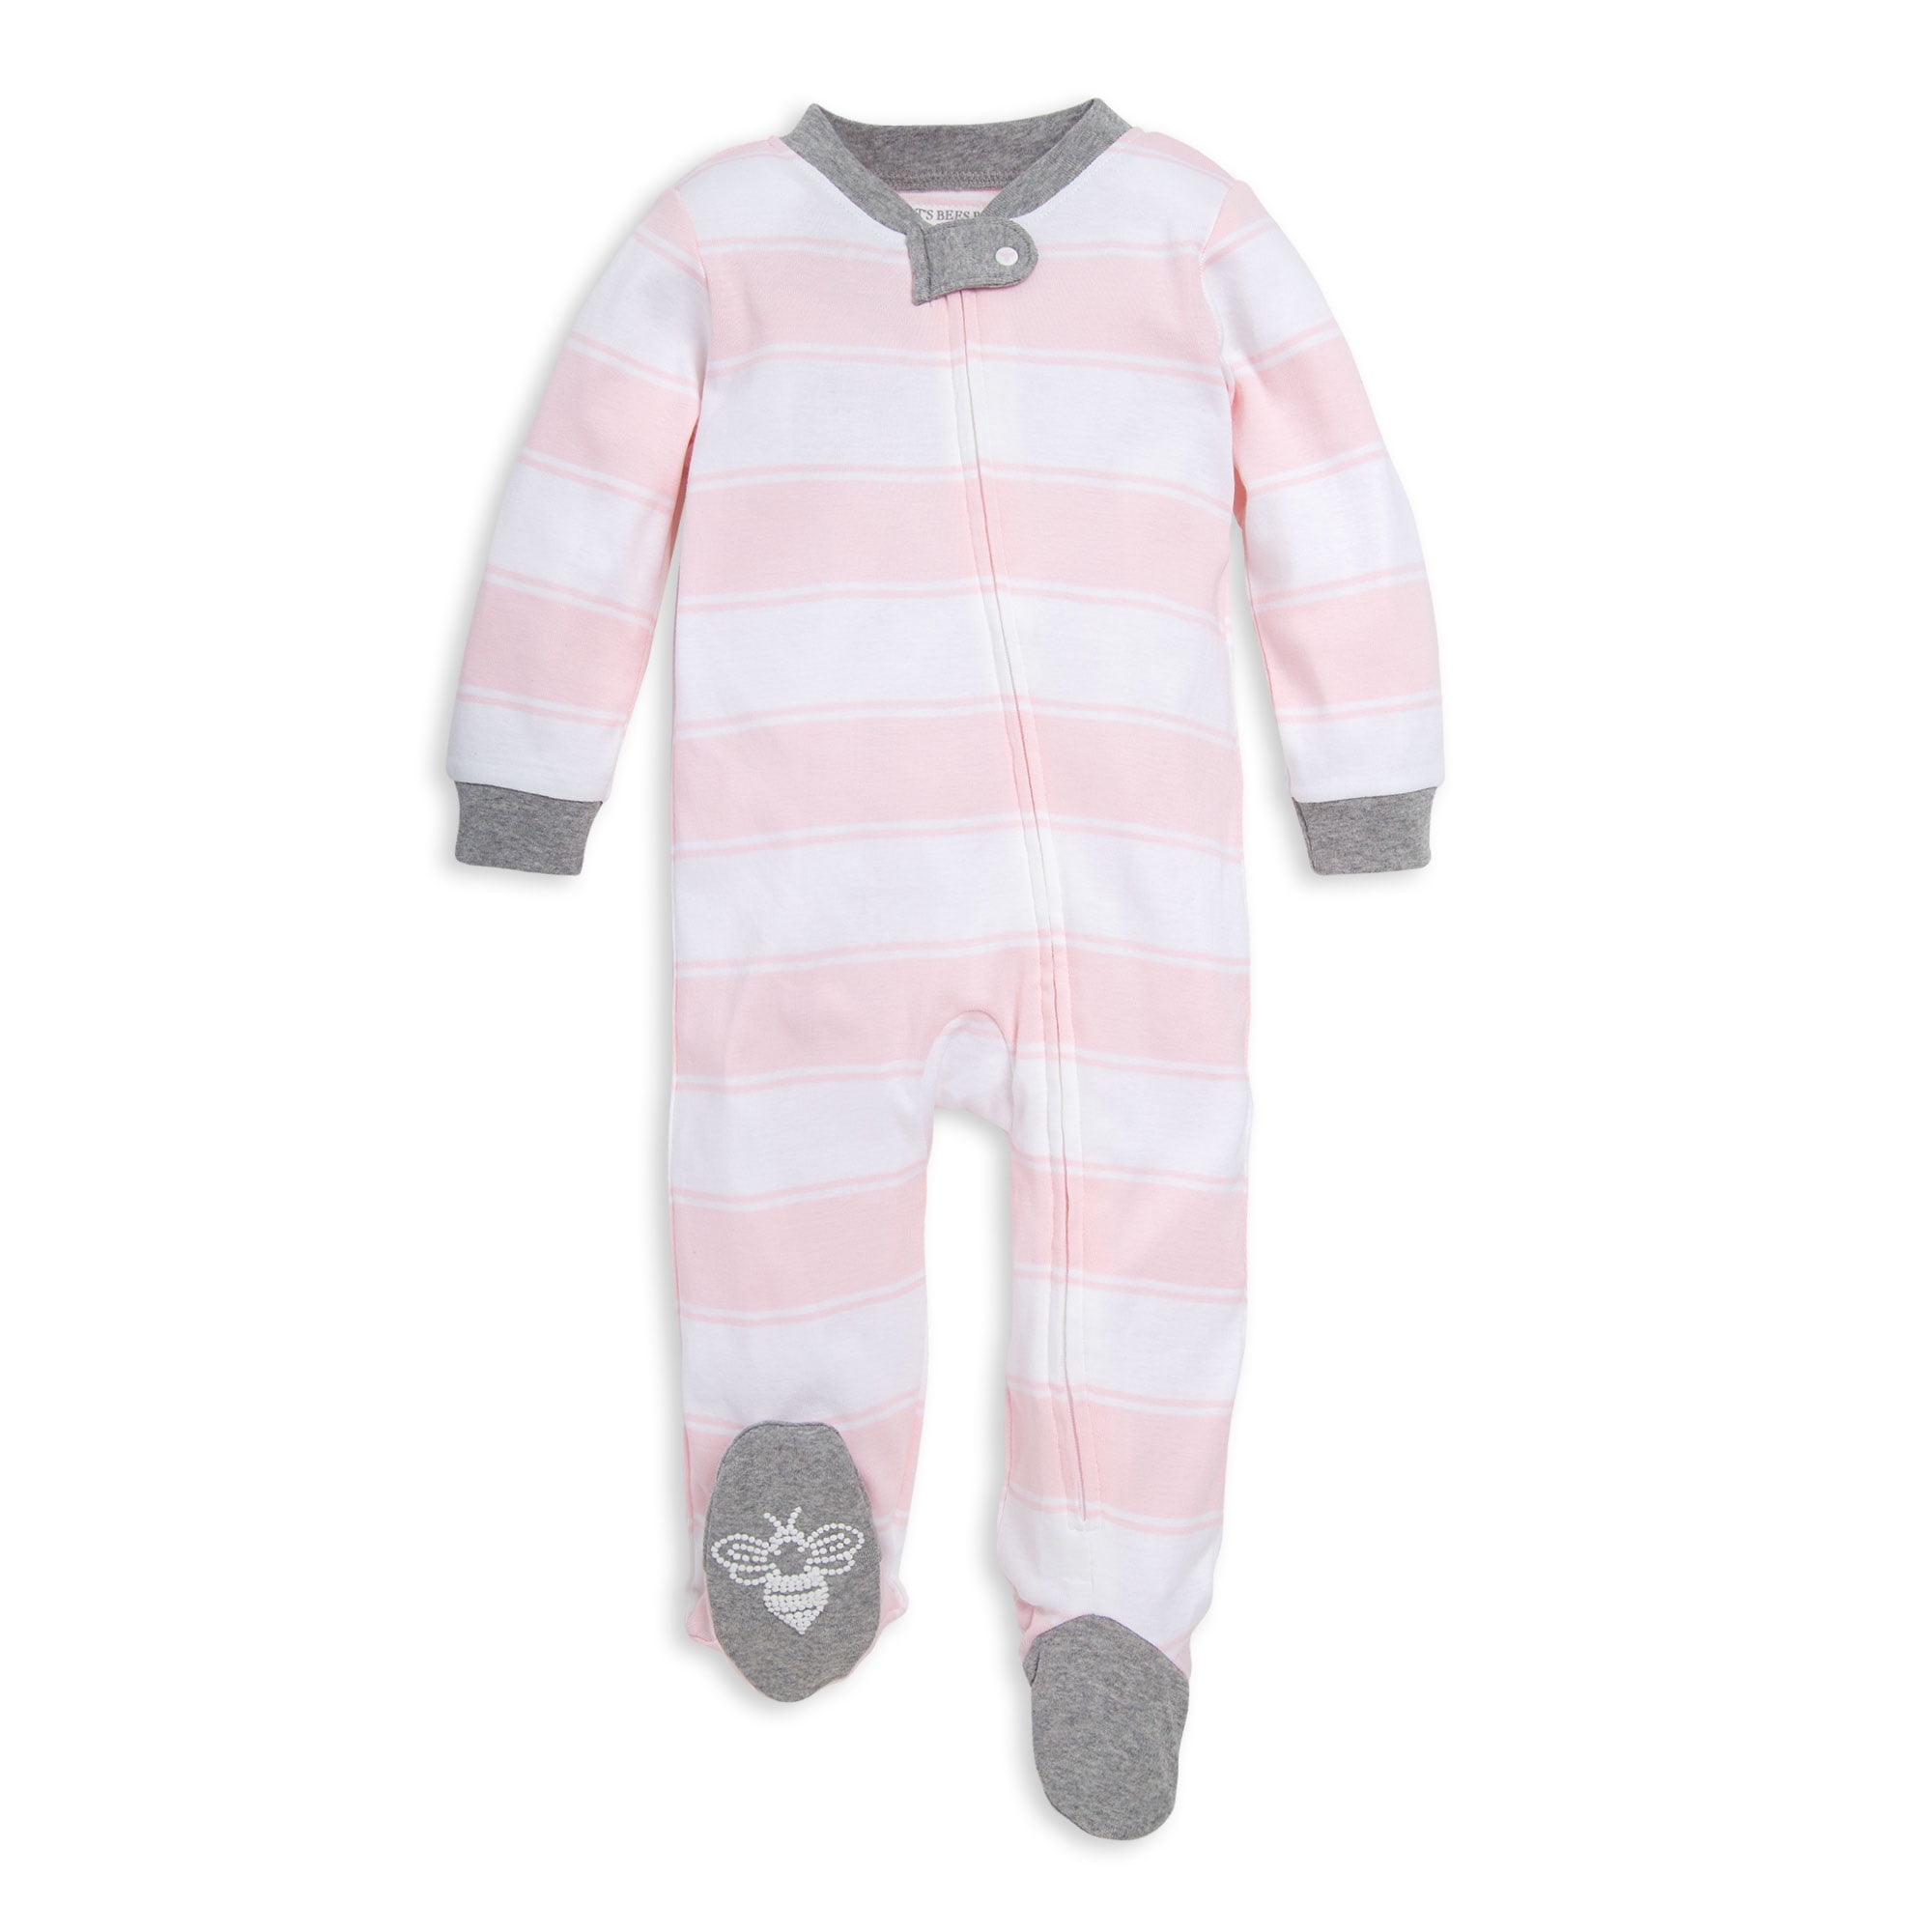 Original Design Electrik Kidz Newborn Unisex Baby Gift Boy Girl Knotted Sleep Gown 100% Organic Cotton